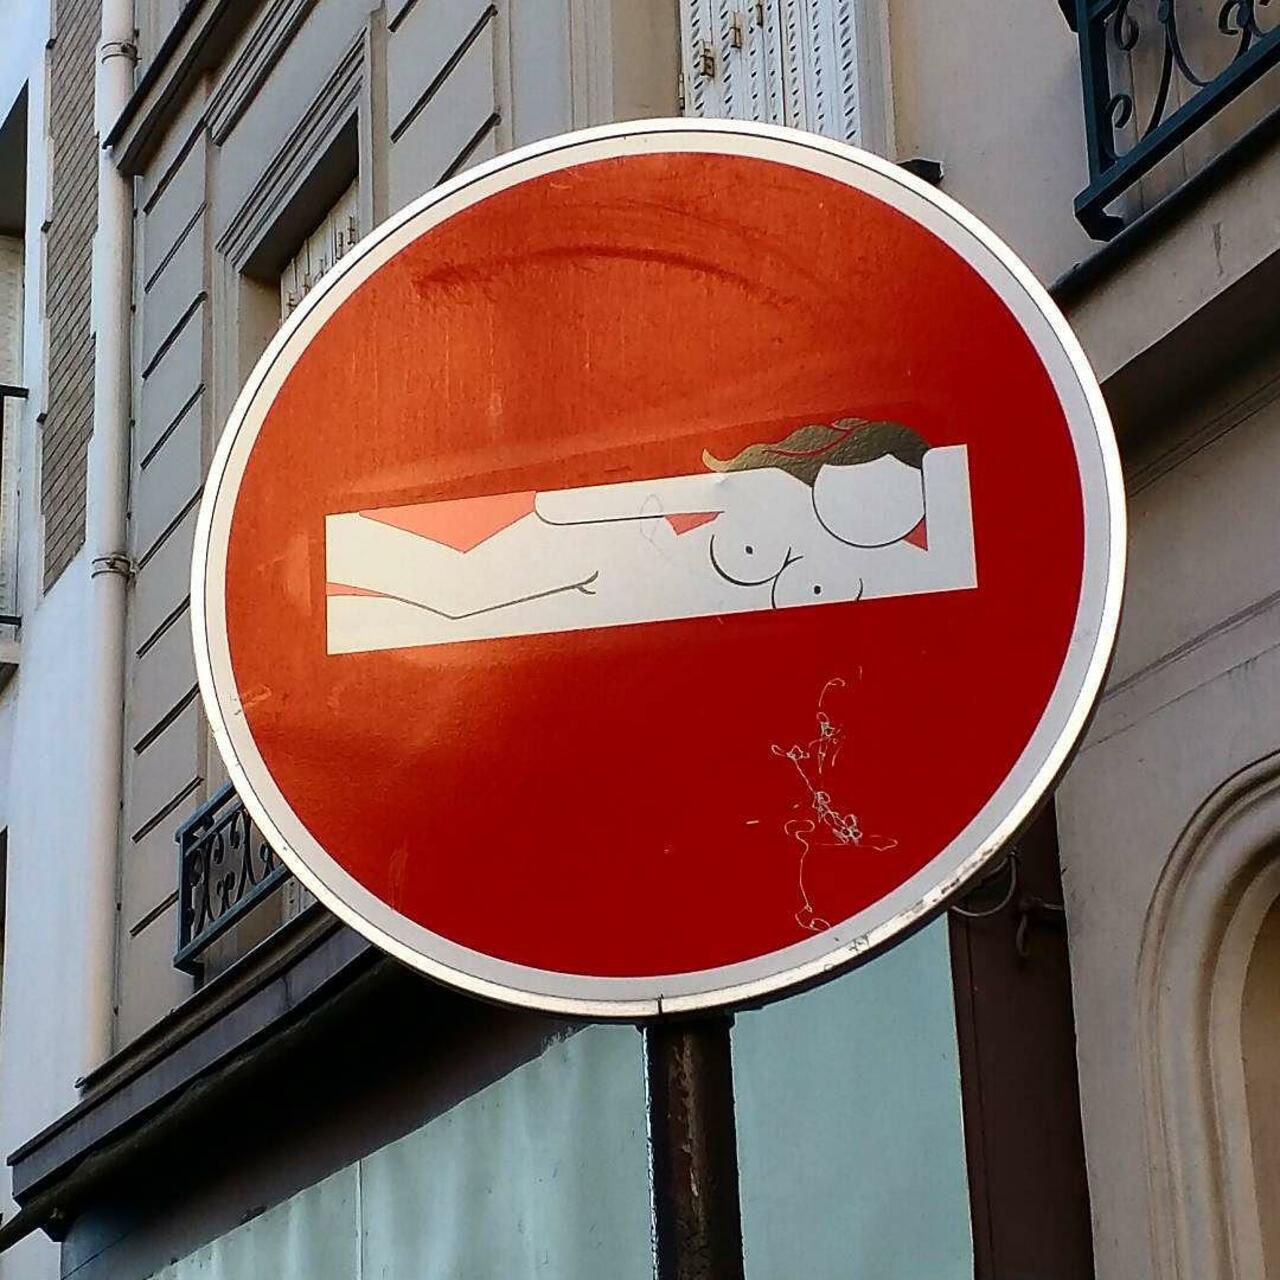 circumjacent_fr: #Paris #graffiti photo by alphaquadra http://ift.tt/1WtAteQ #StreetArt http://t.co/HZ4WNyjBjC